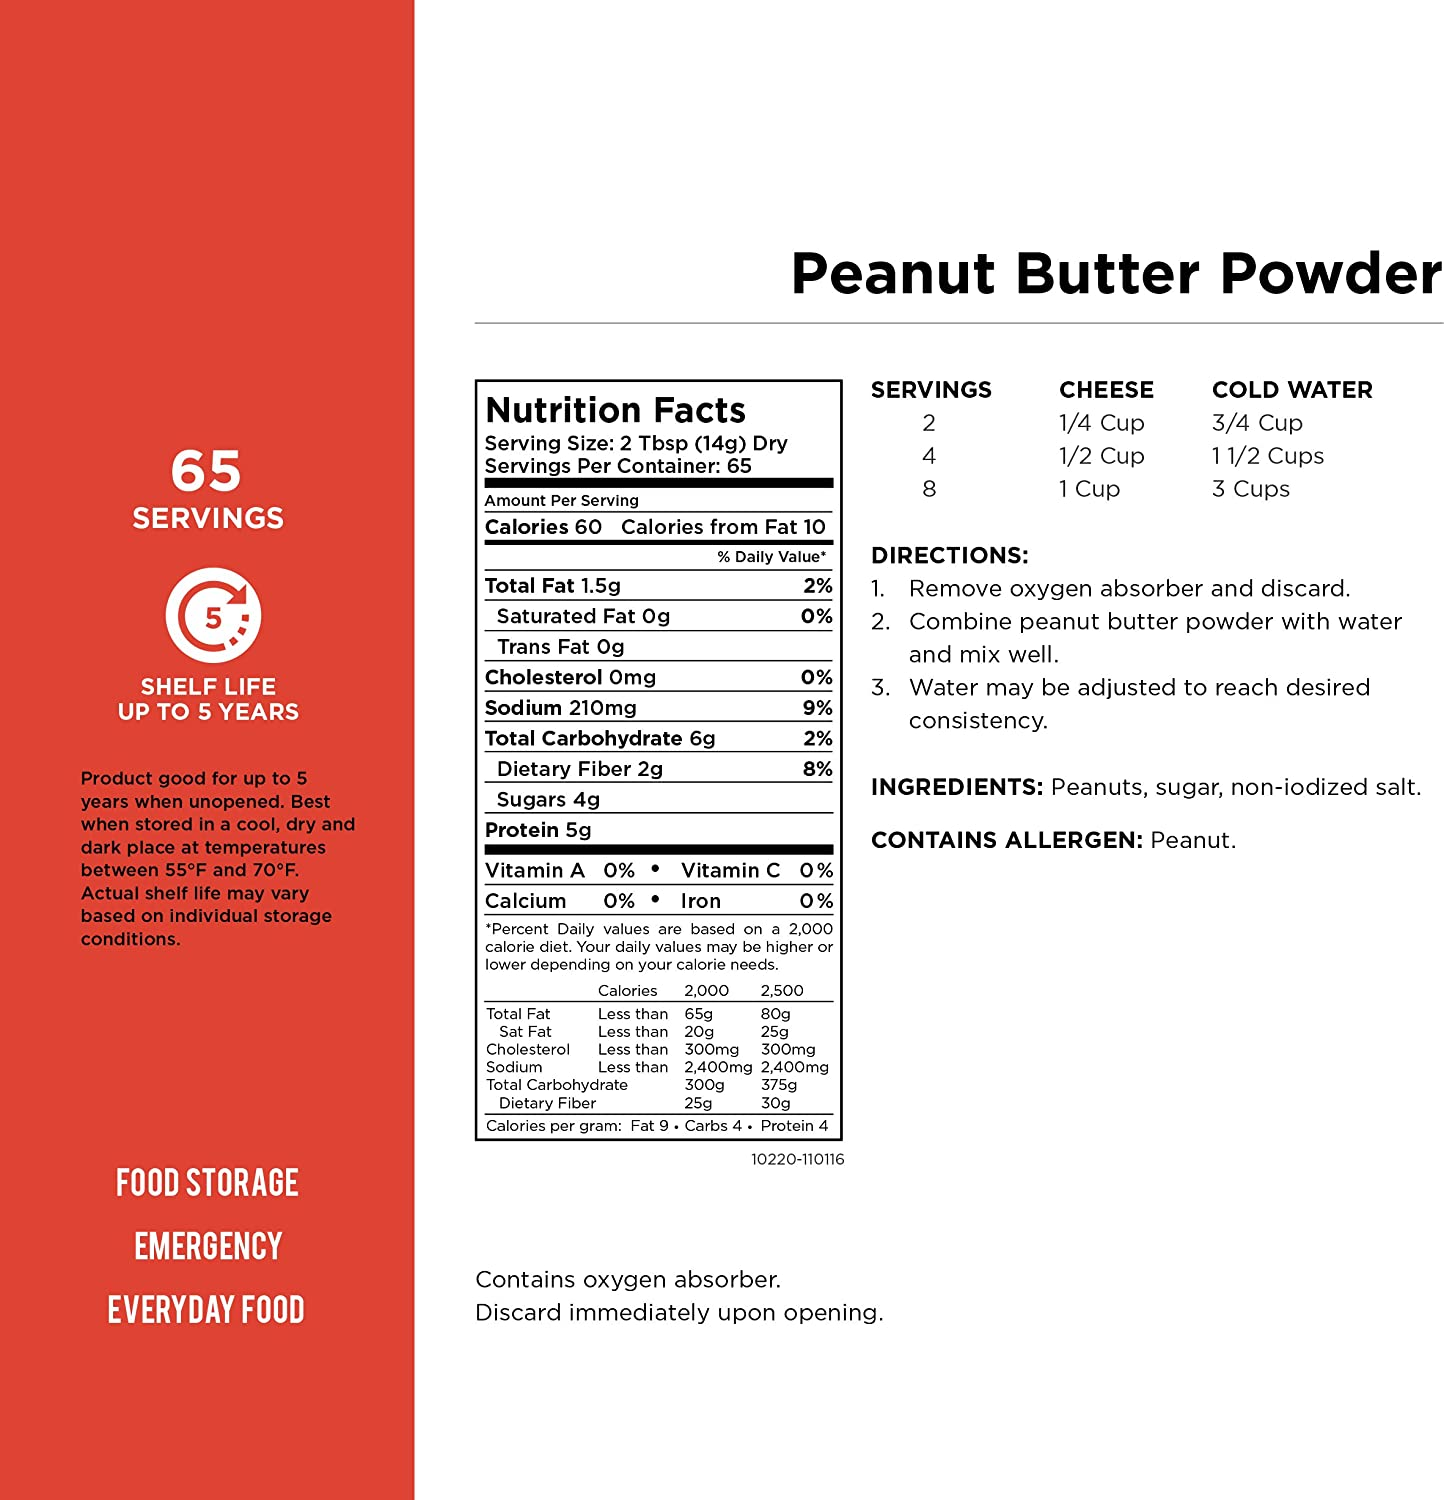 Augason Farms Peanut Butter Powder 2 Lbs No. 10 Can